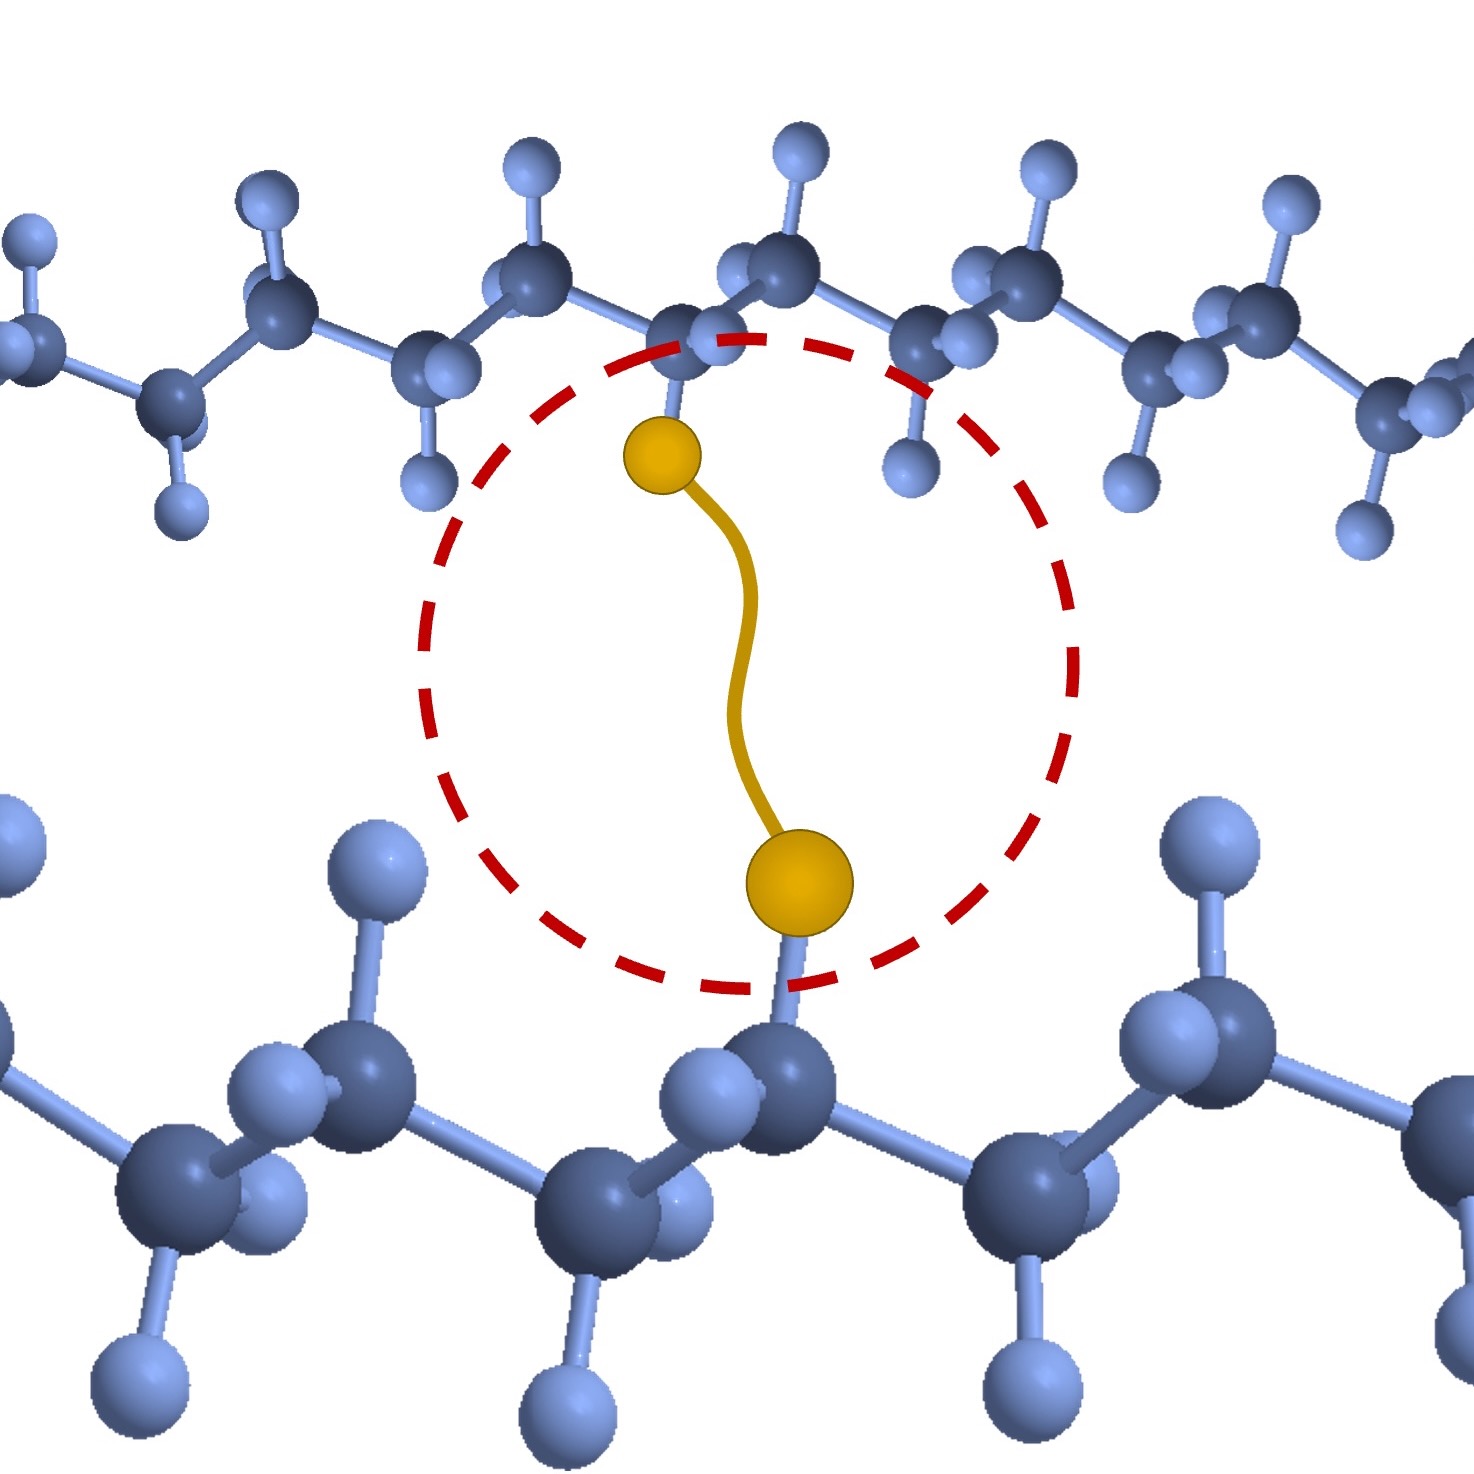 Diazirine crosslinkers form bonds across polymer chains